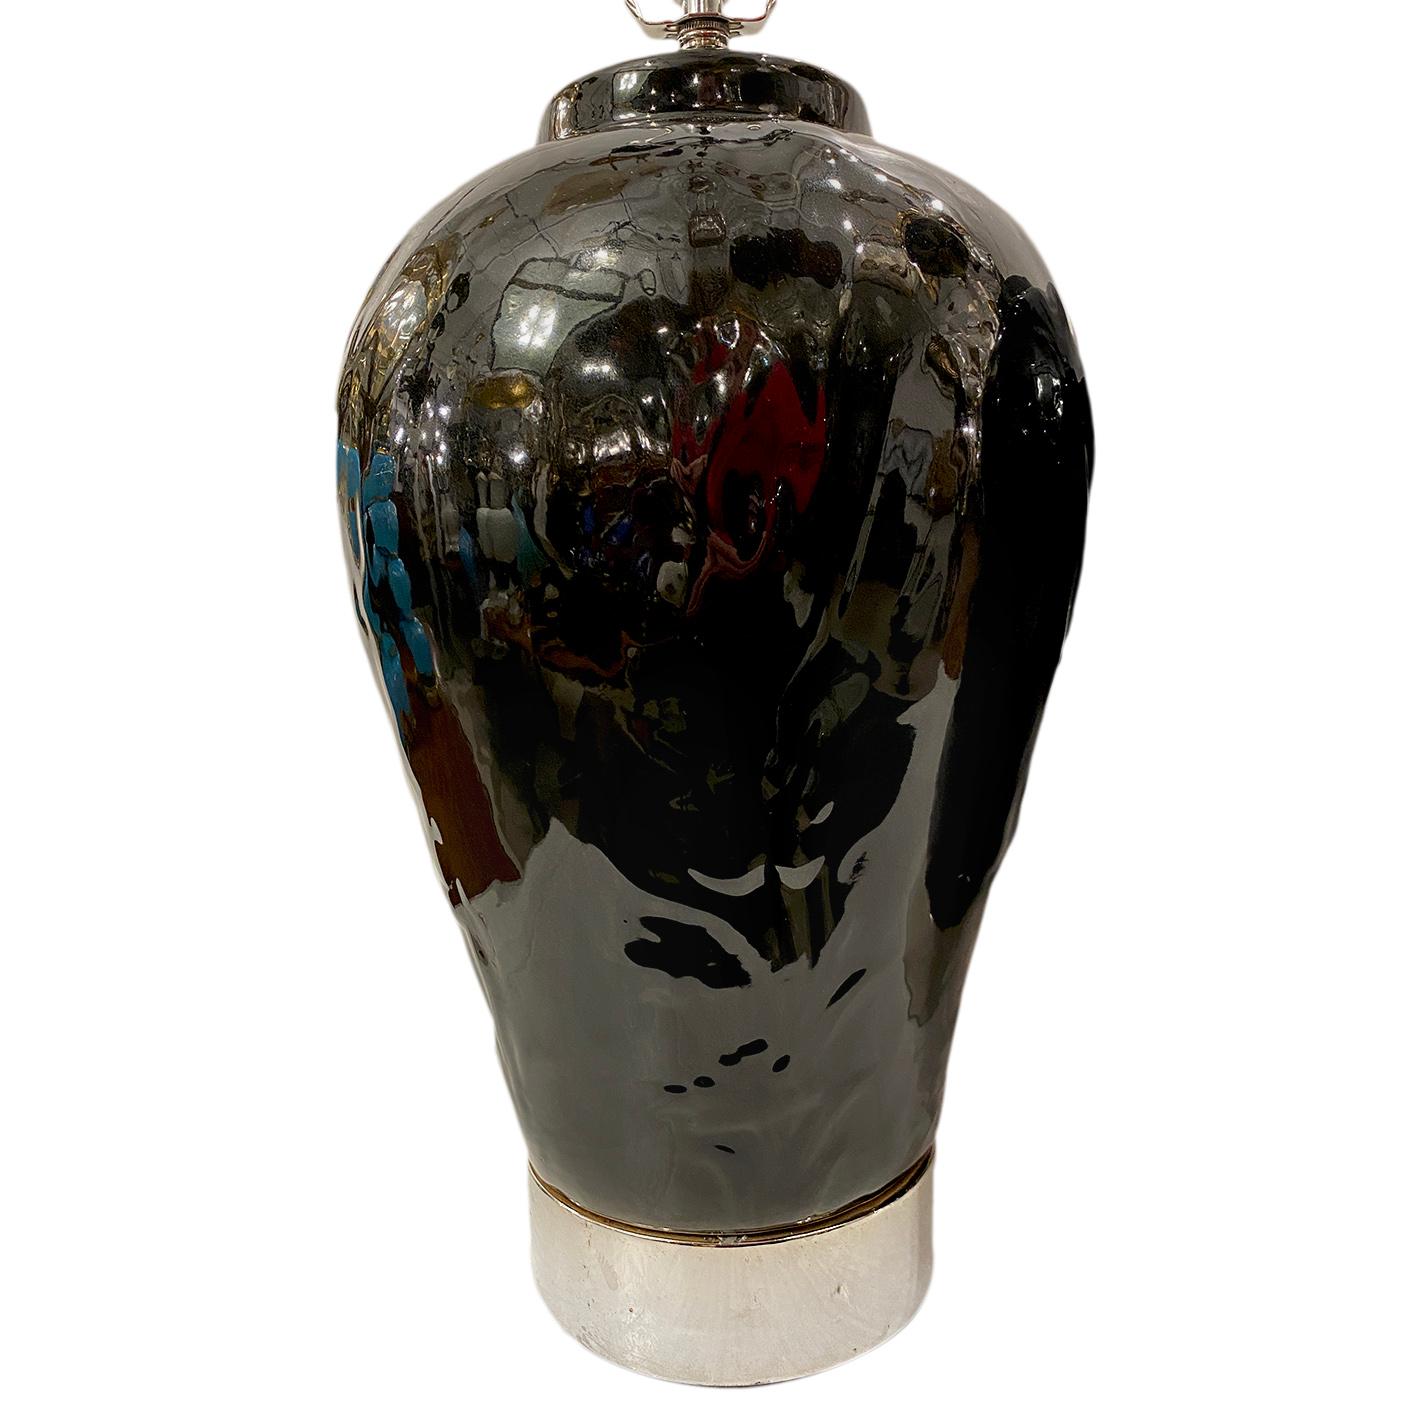 Une paire de lampes de table en porcelaine noire des années 1950 avec des bases plaquées argent.

Mesures :
Hauteur du corps 18
Largeur 11